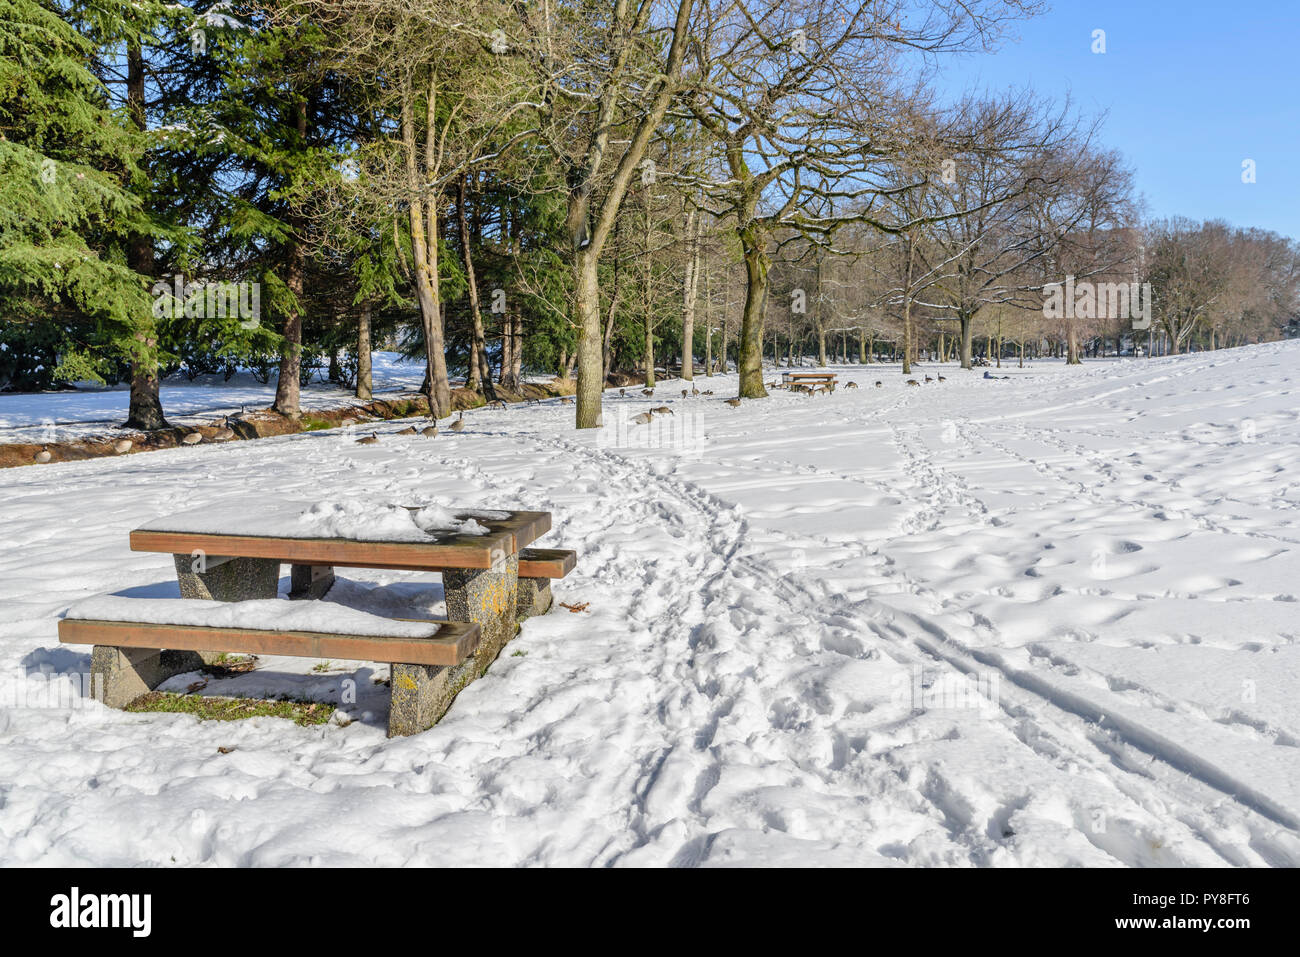 Einen hellen, sonnigen Wintertag in eine verschneite Stadt Park, ein Tisch und eine Bank mit Schnee bedeckt, Spuren im Schnee, Gänse, grünen Bäumen und einem blauen Himmel Stockfoto